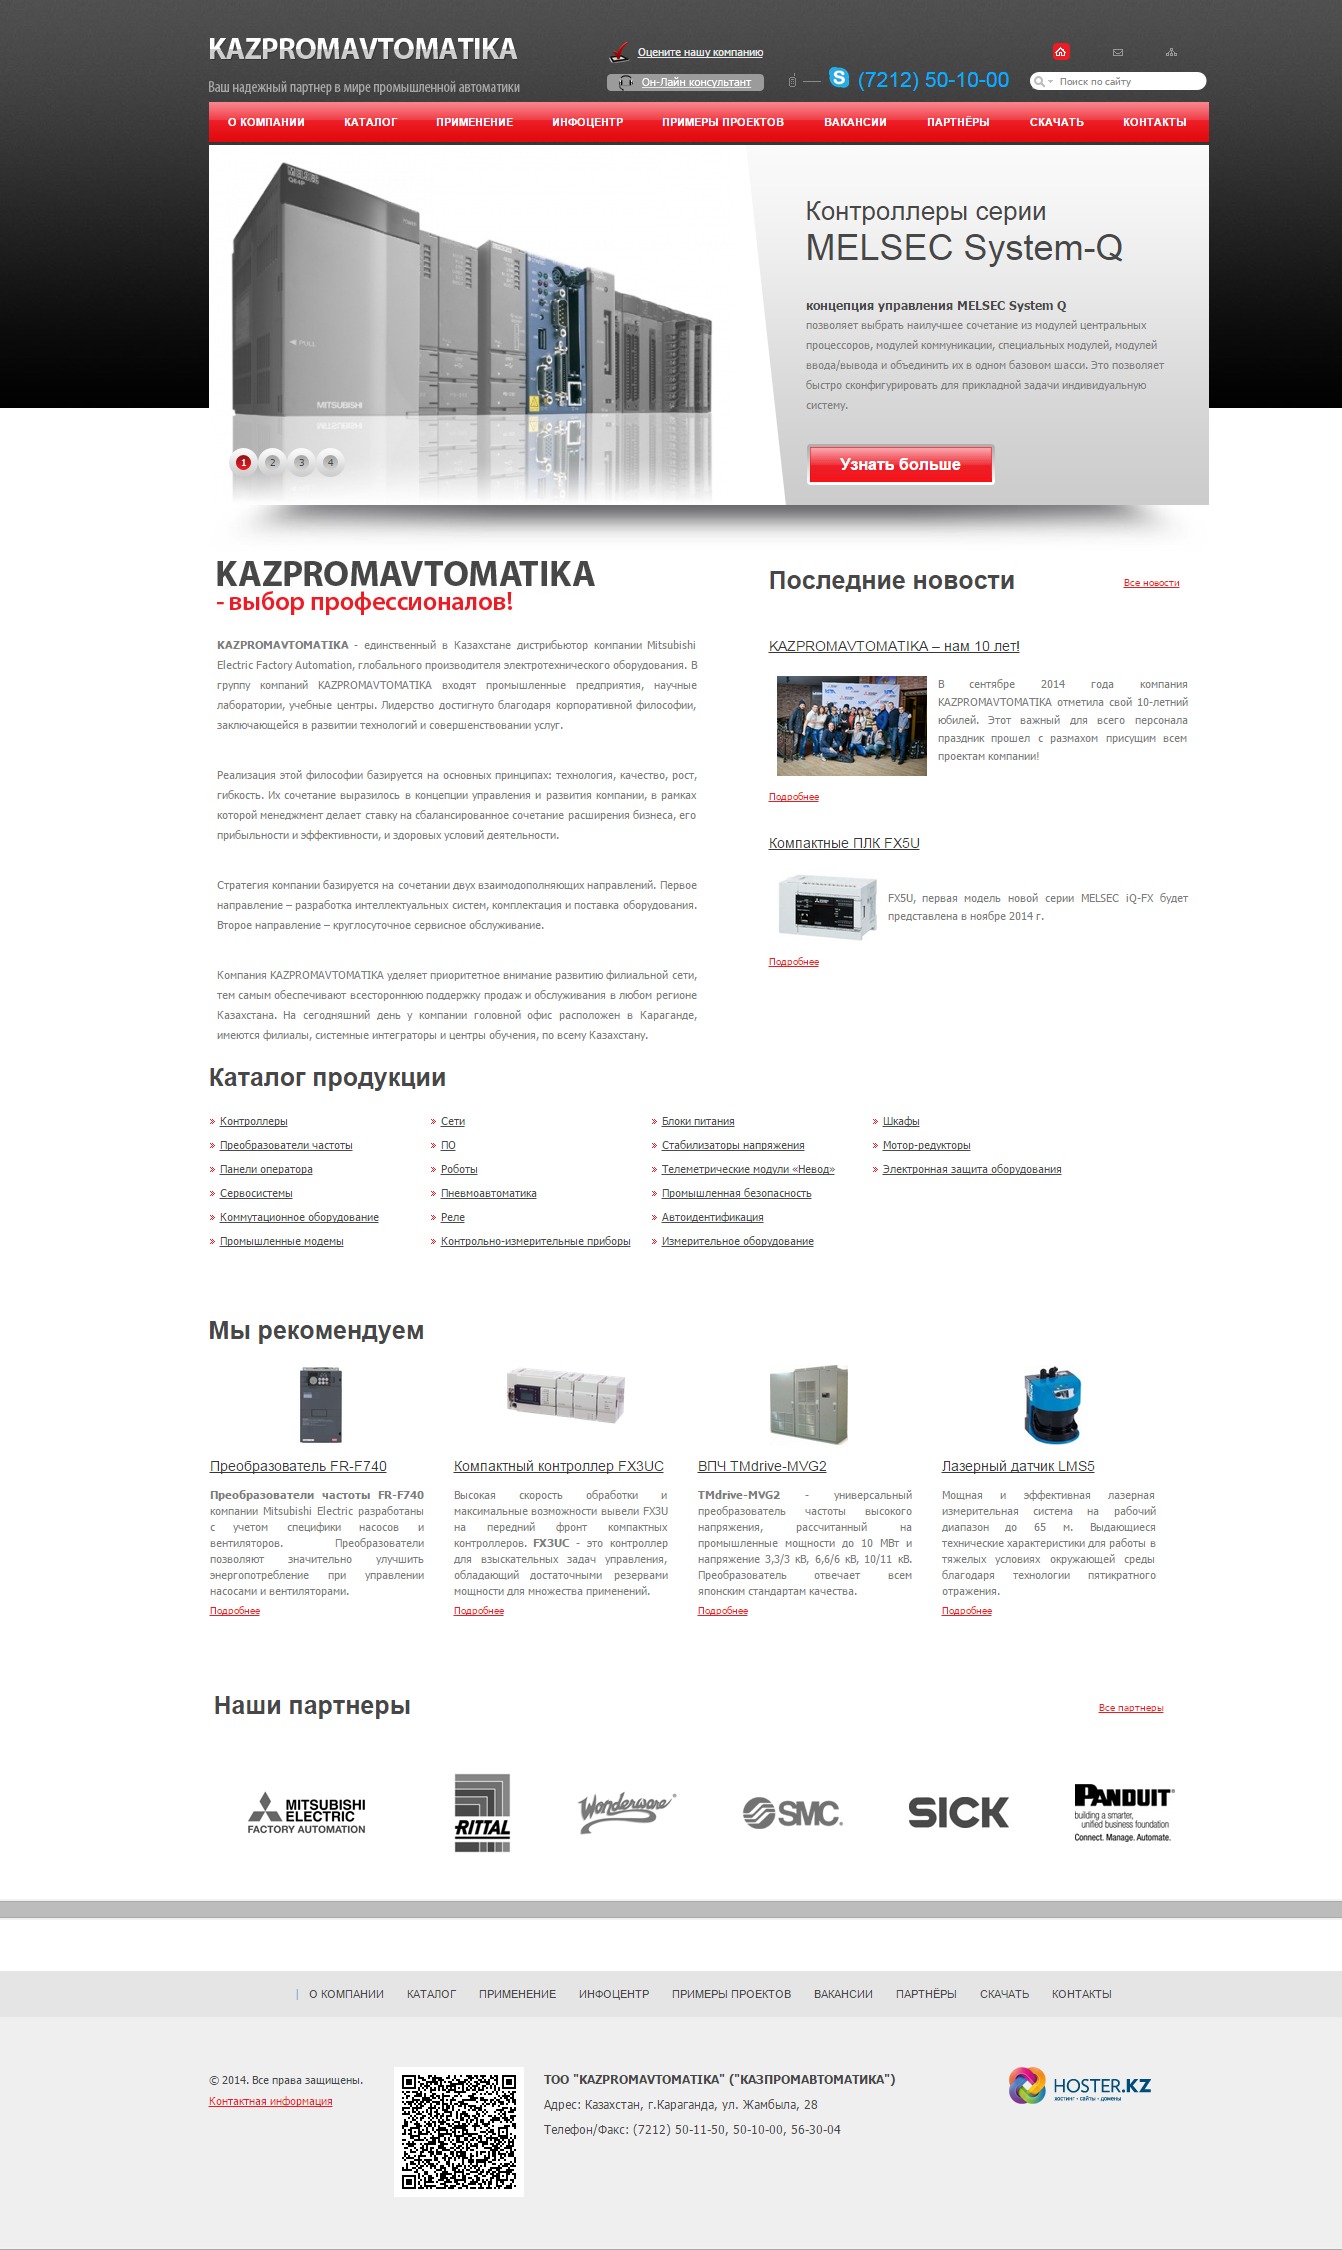 сайт для компании kazpromavtomatika